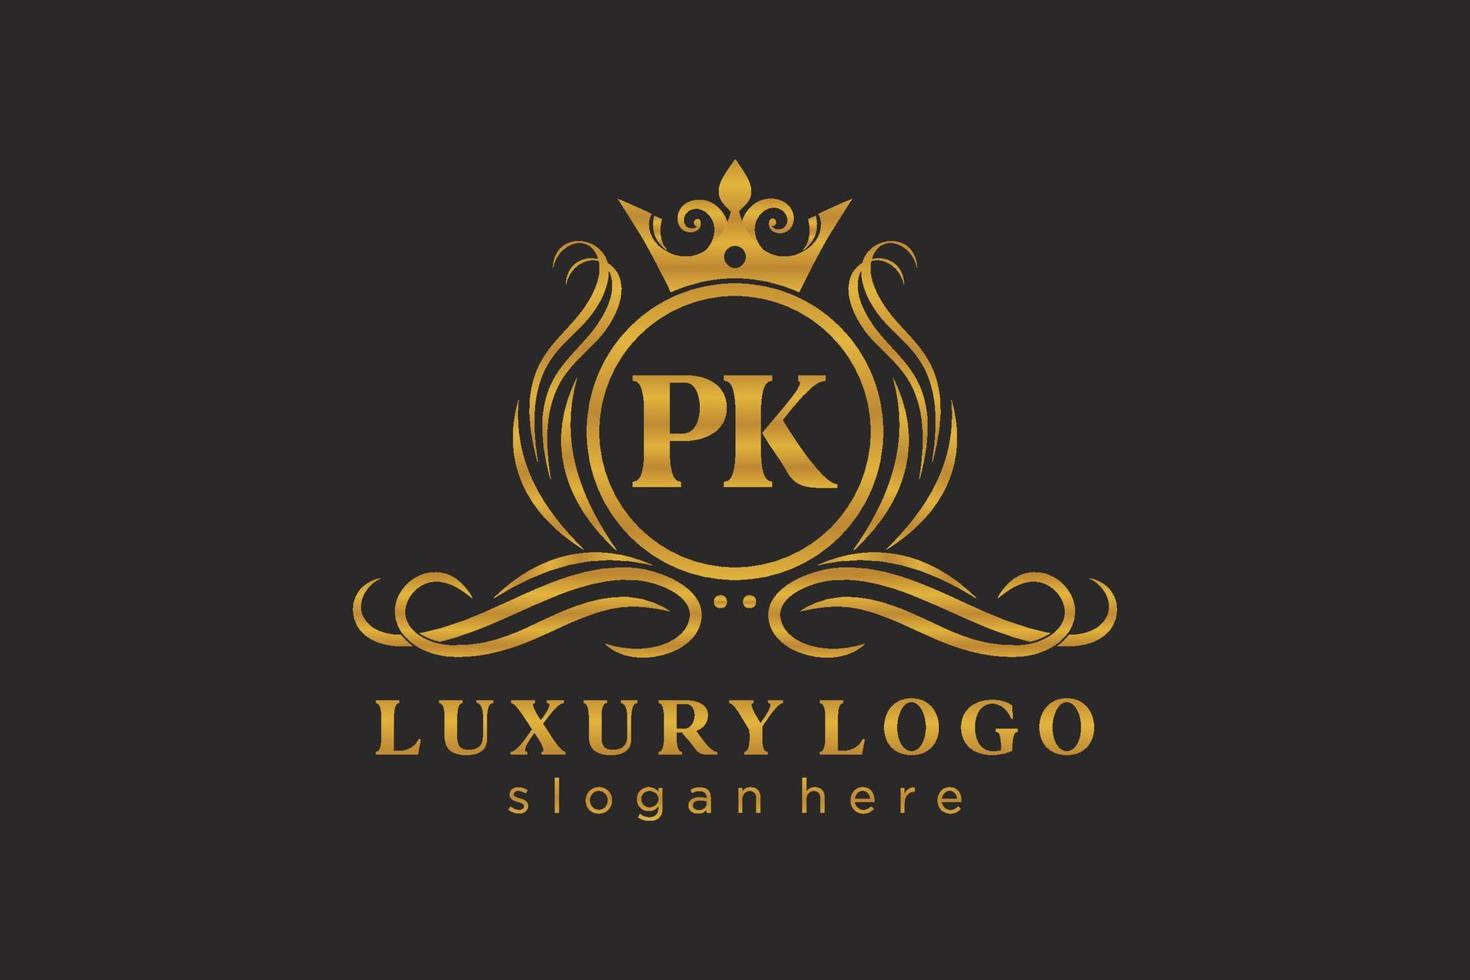 plantilla de logotipo de lujo real de letra pk inicial en arte vectorial para restaurante, realeza, boutique, cafetería, hotel, heráldica, joyería, moda y otras ilustraciones vectoriales. vector